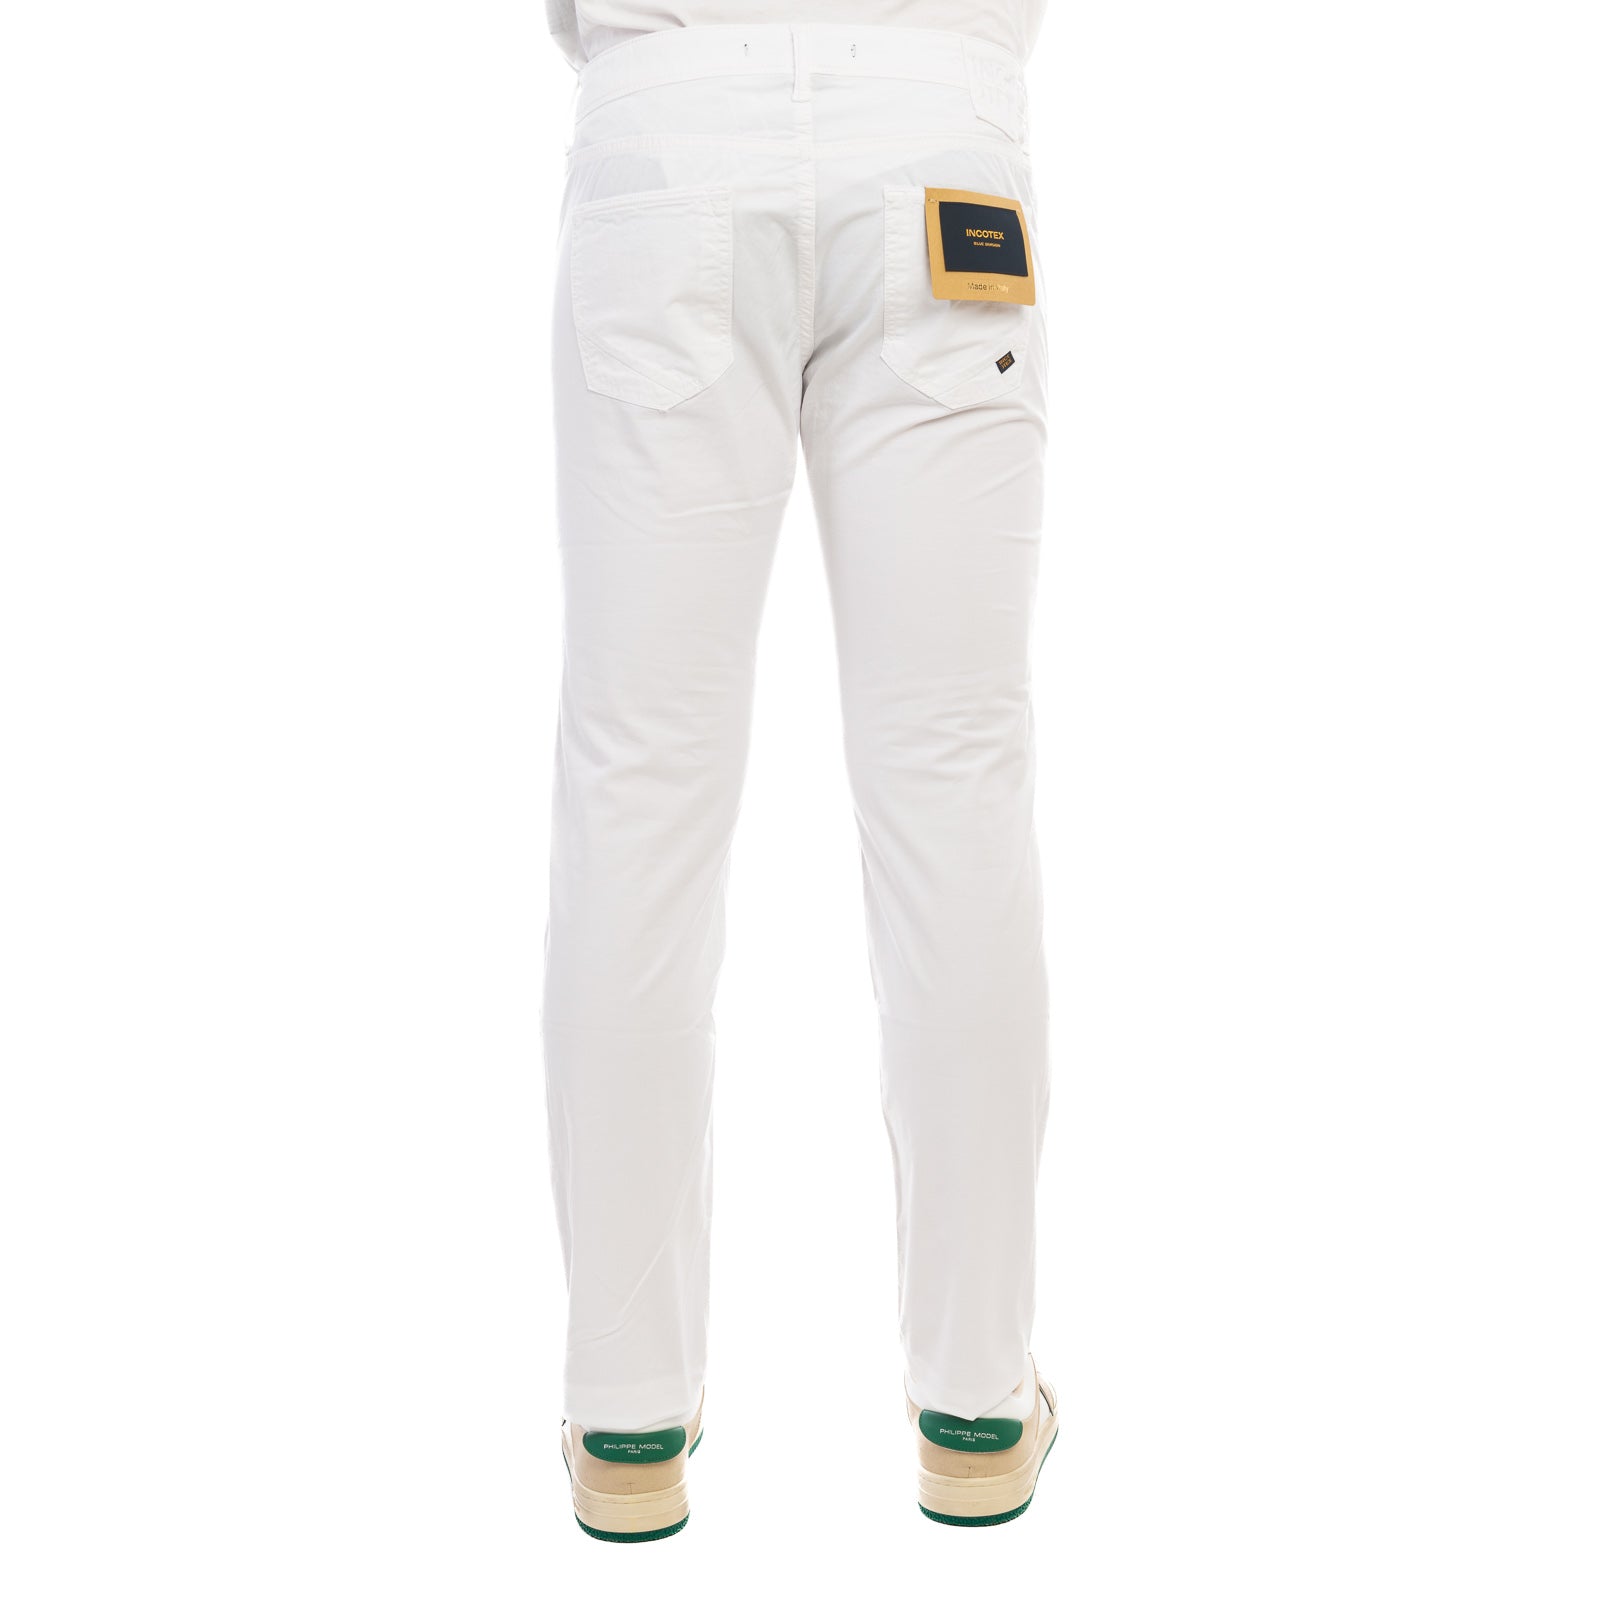 Pantalone INCOTEX
Bianco ottico